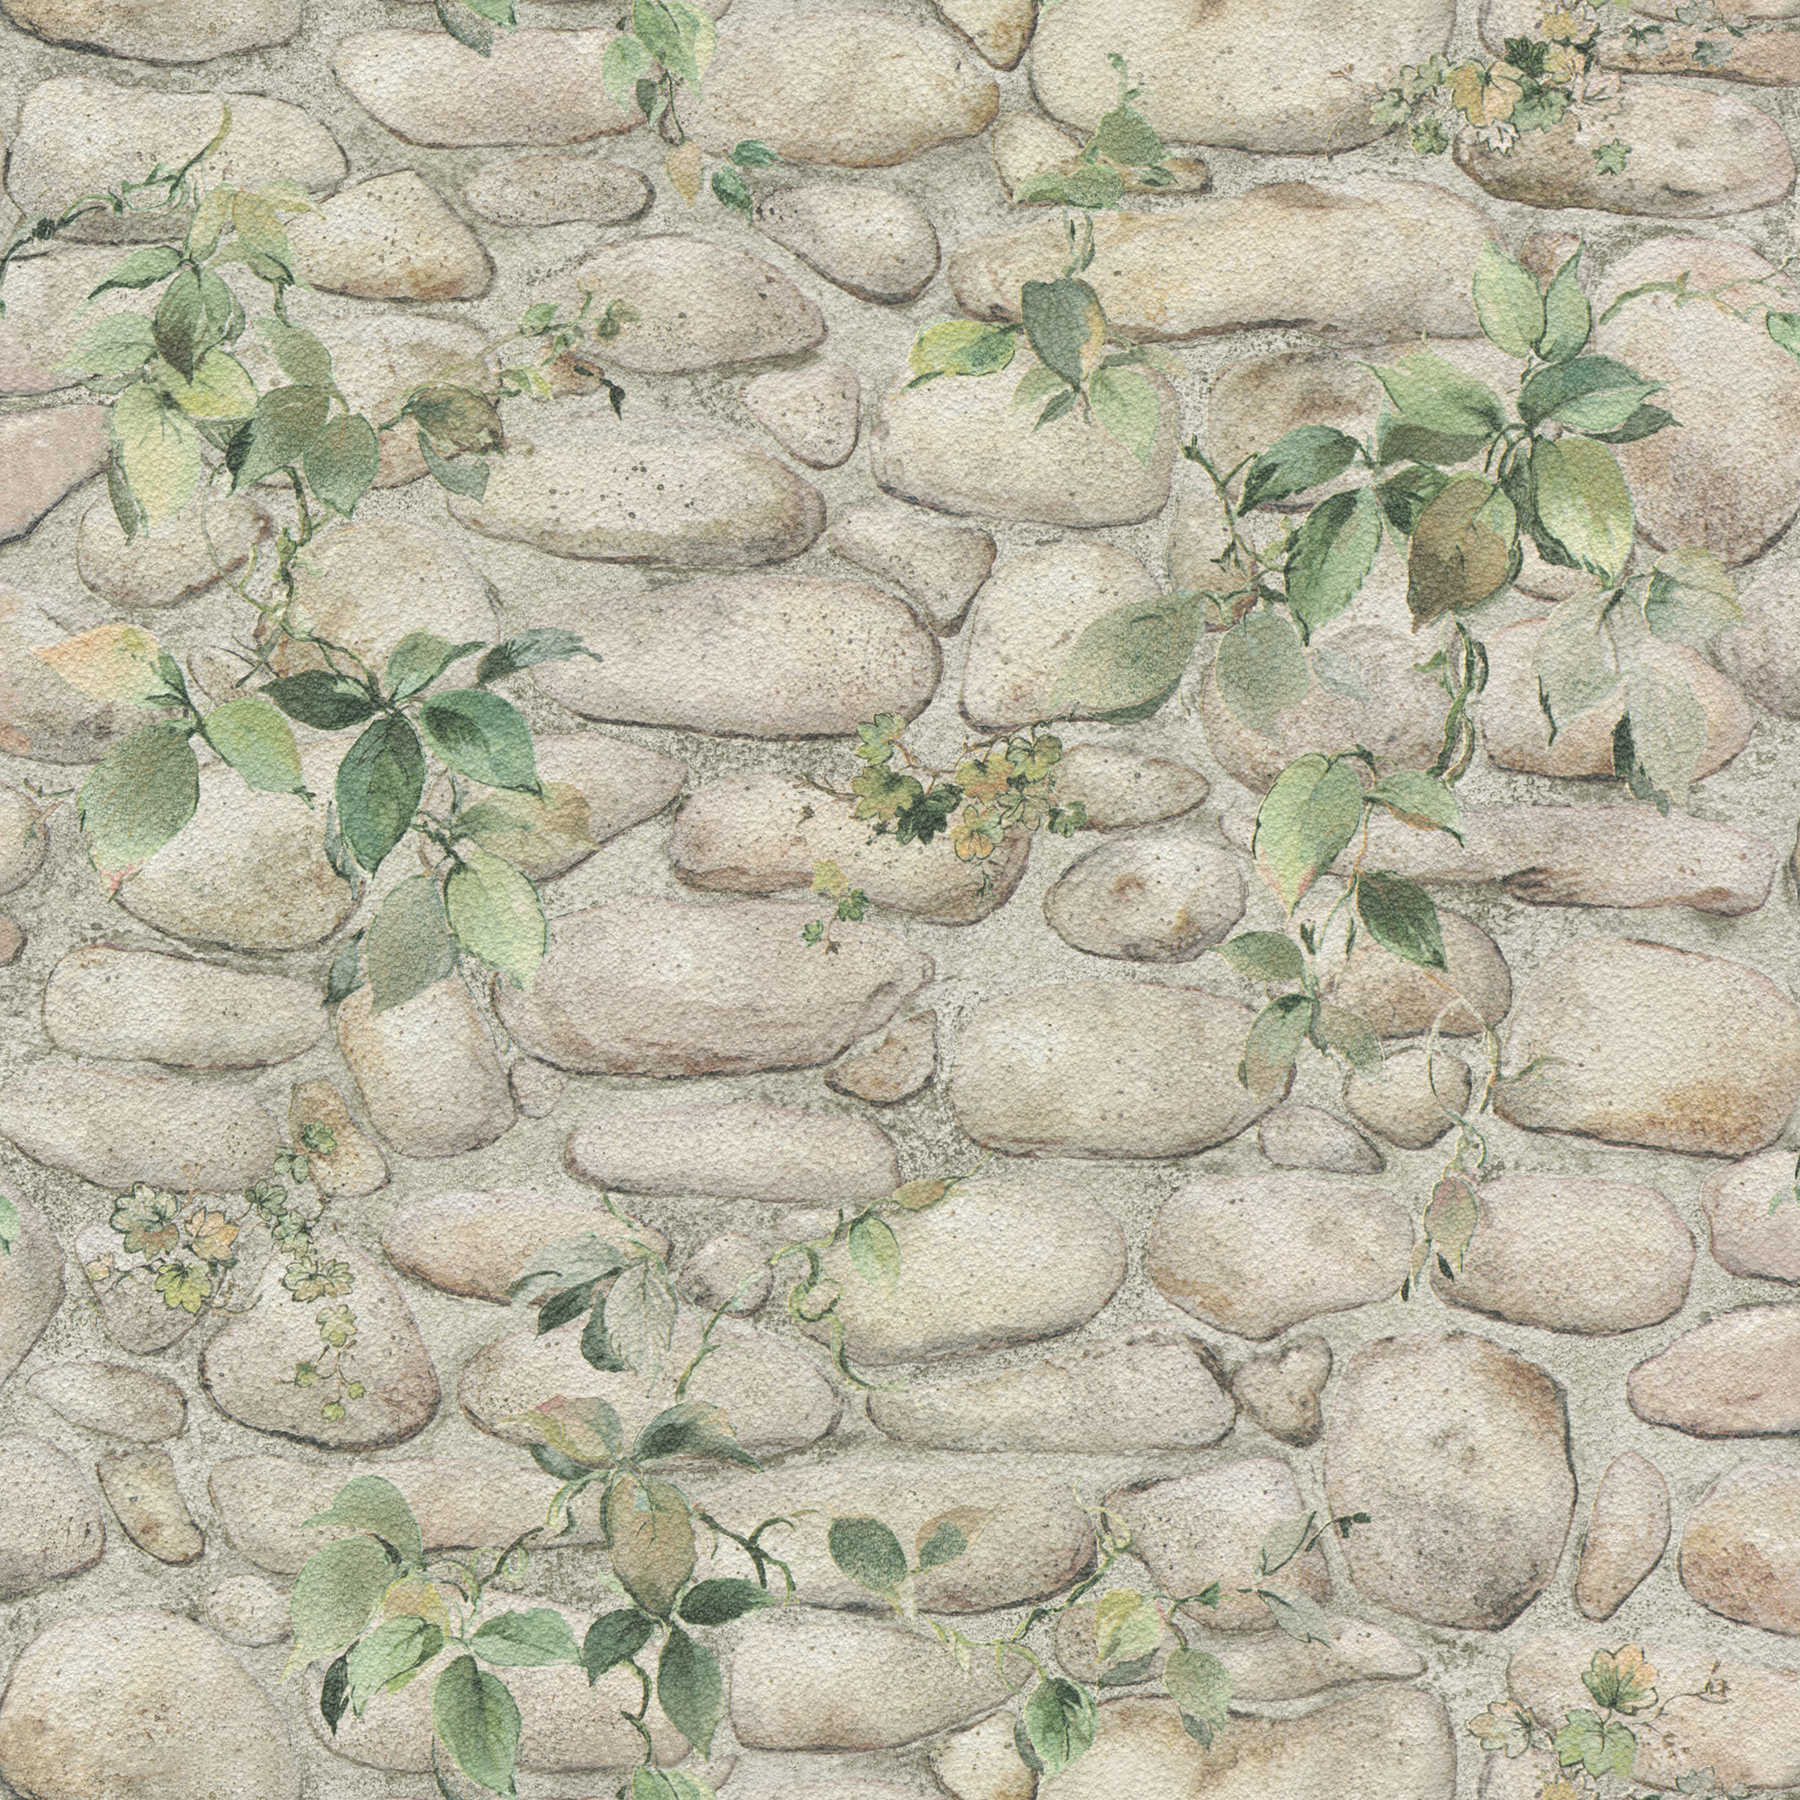 Stone wallpaper natural stone wall & plants - green, grey
